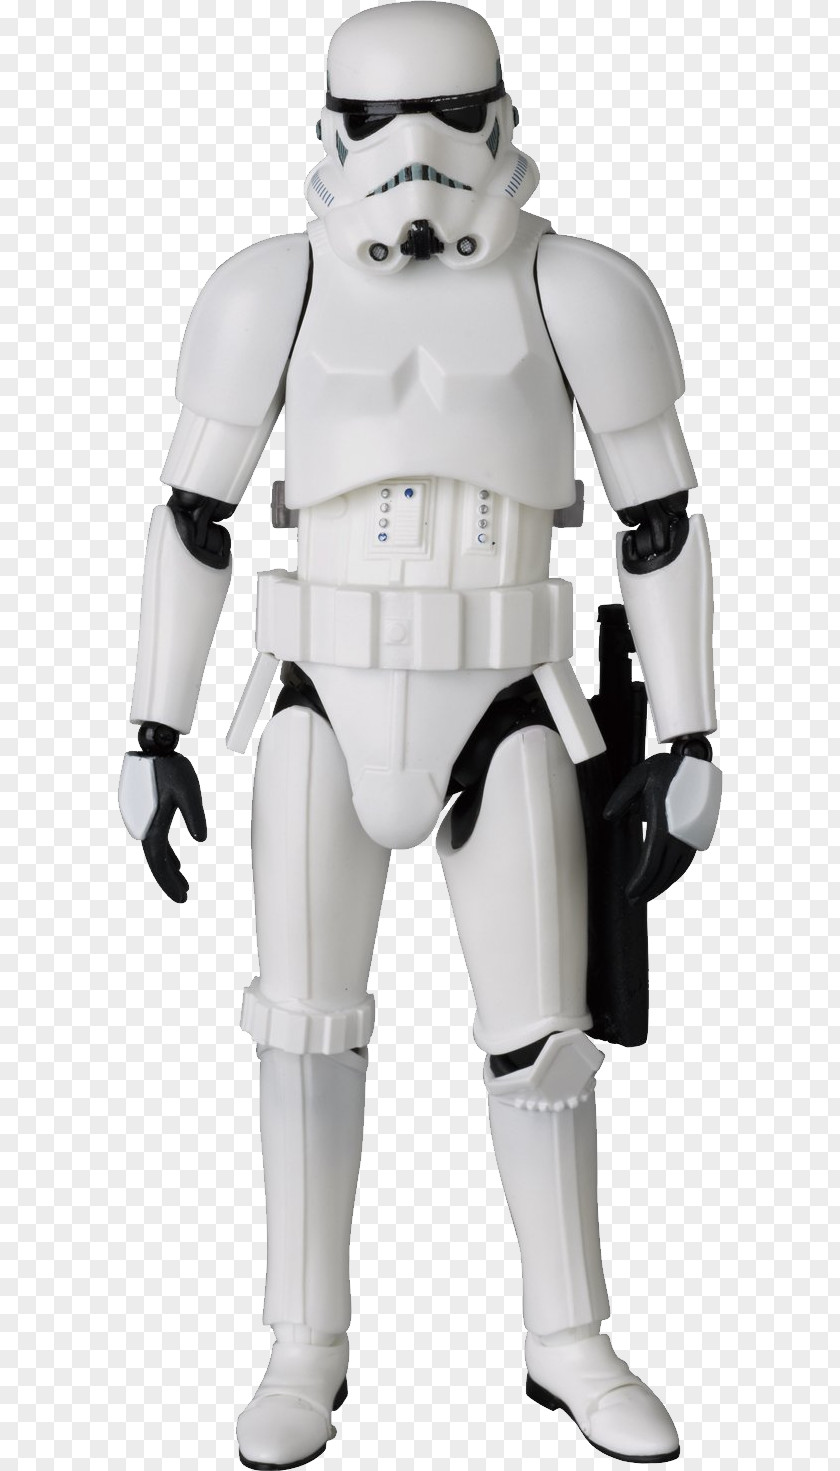 Stormtrooper Anakin Skywalker C-3PO Rey Action Figure PNG